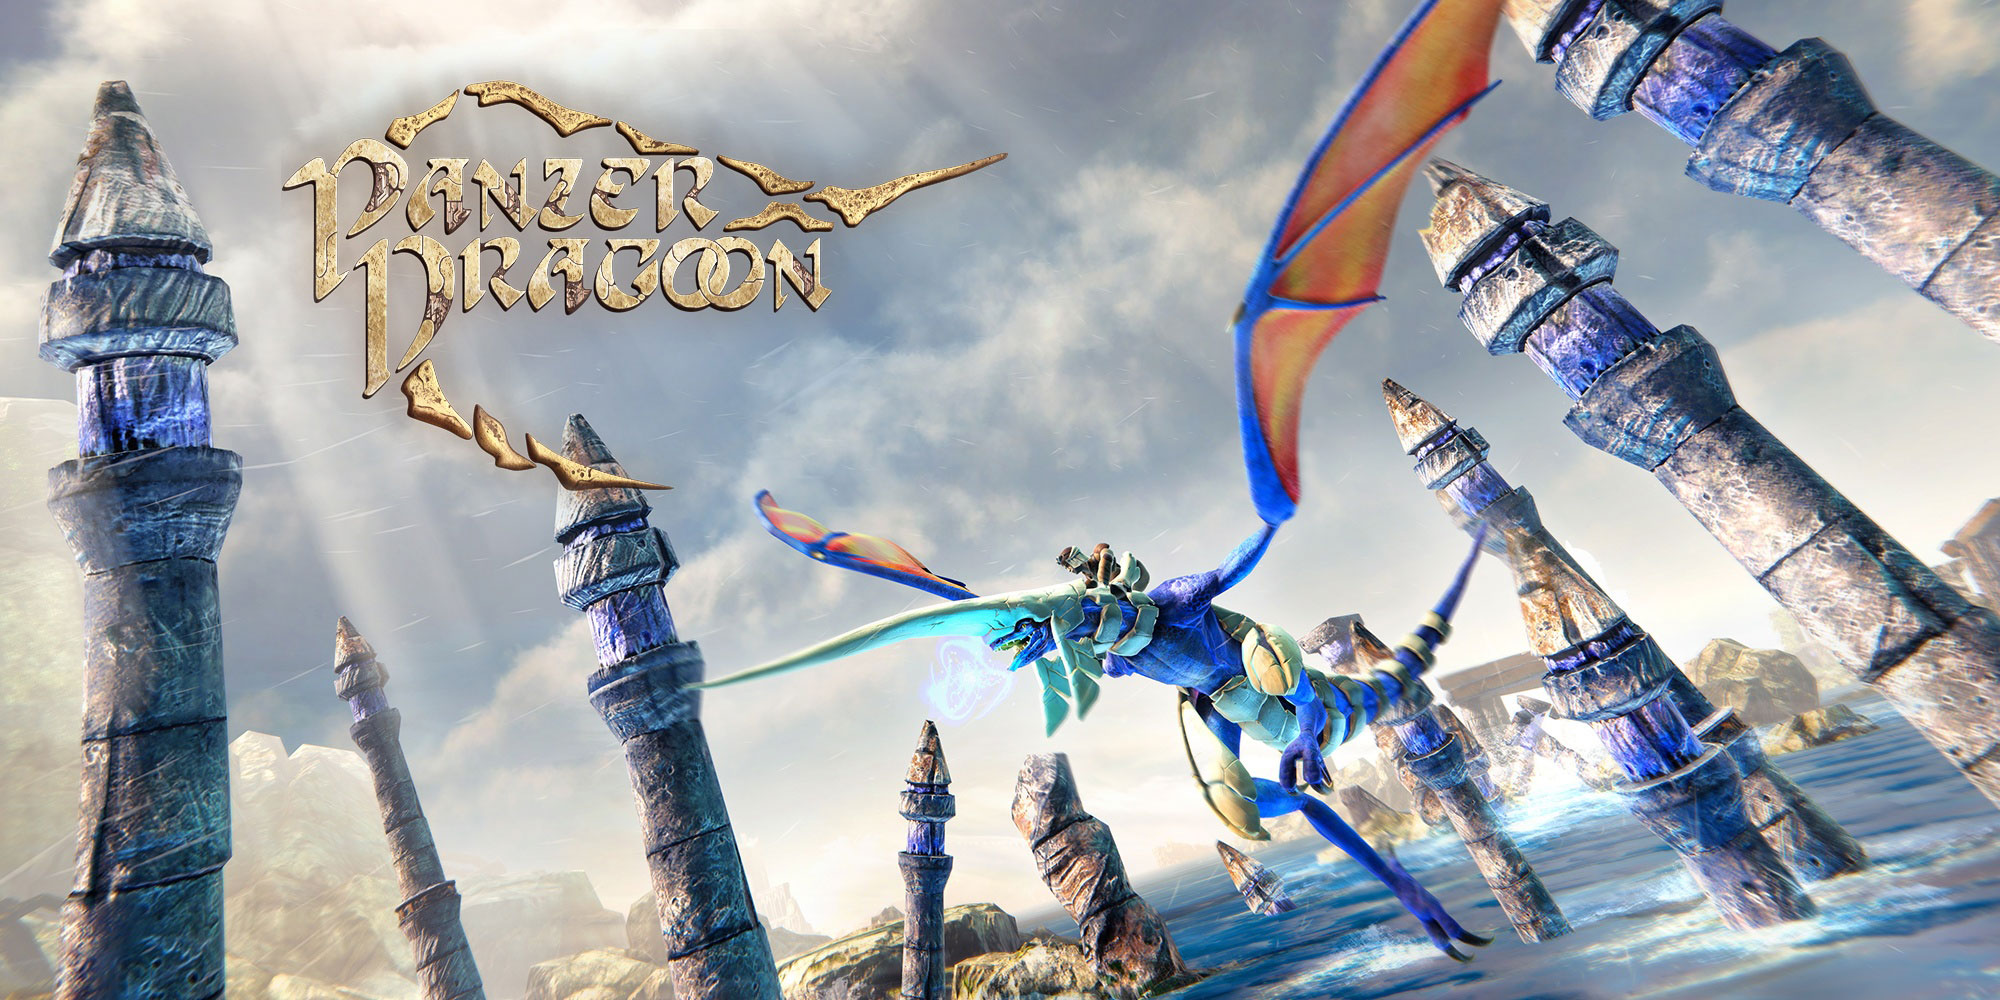 Panzer Dragoon: Remake estará disponible próximamente en PlayStation 4, Xbox One y PC